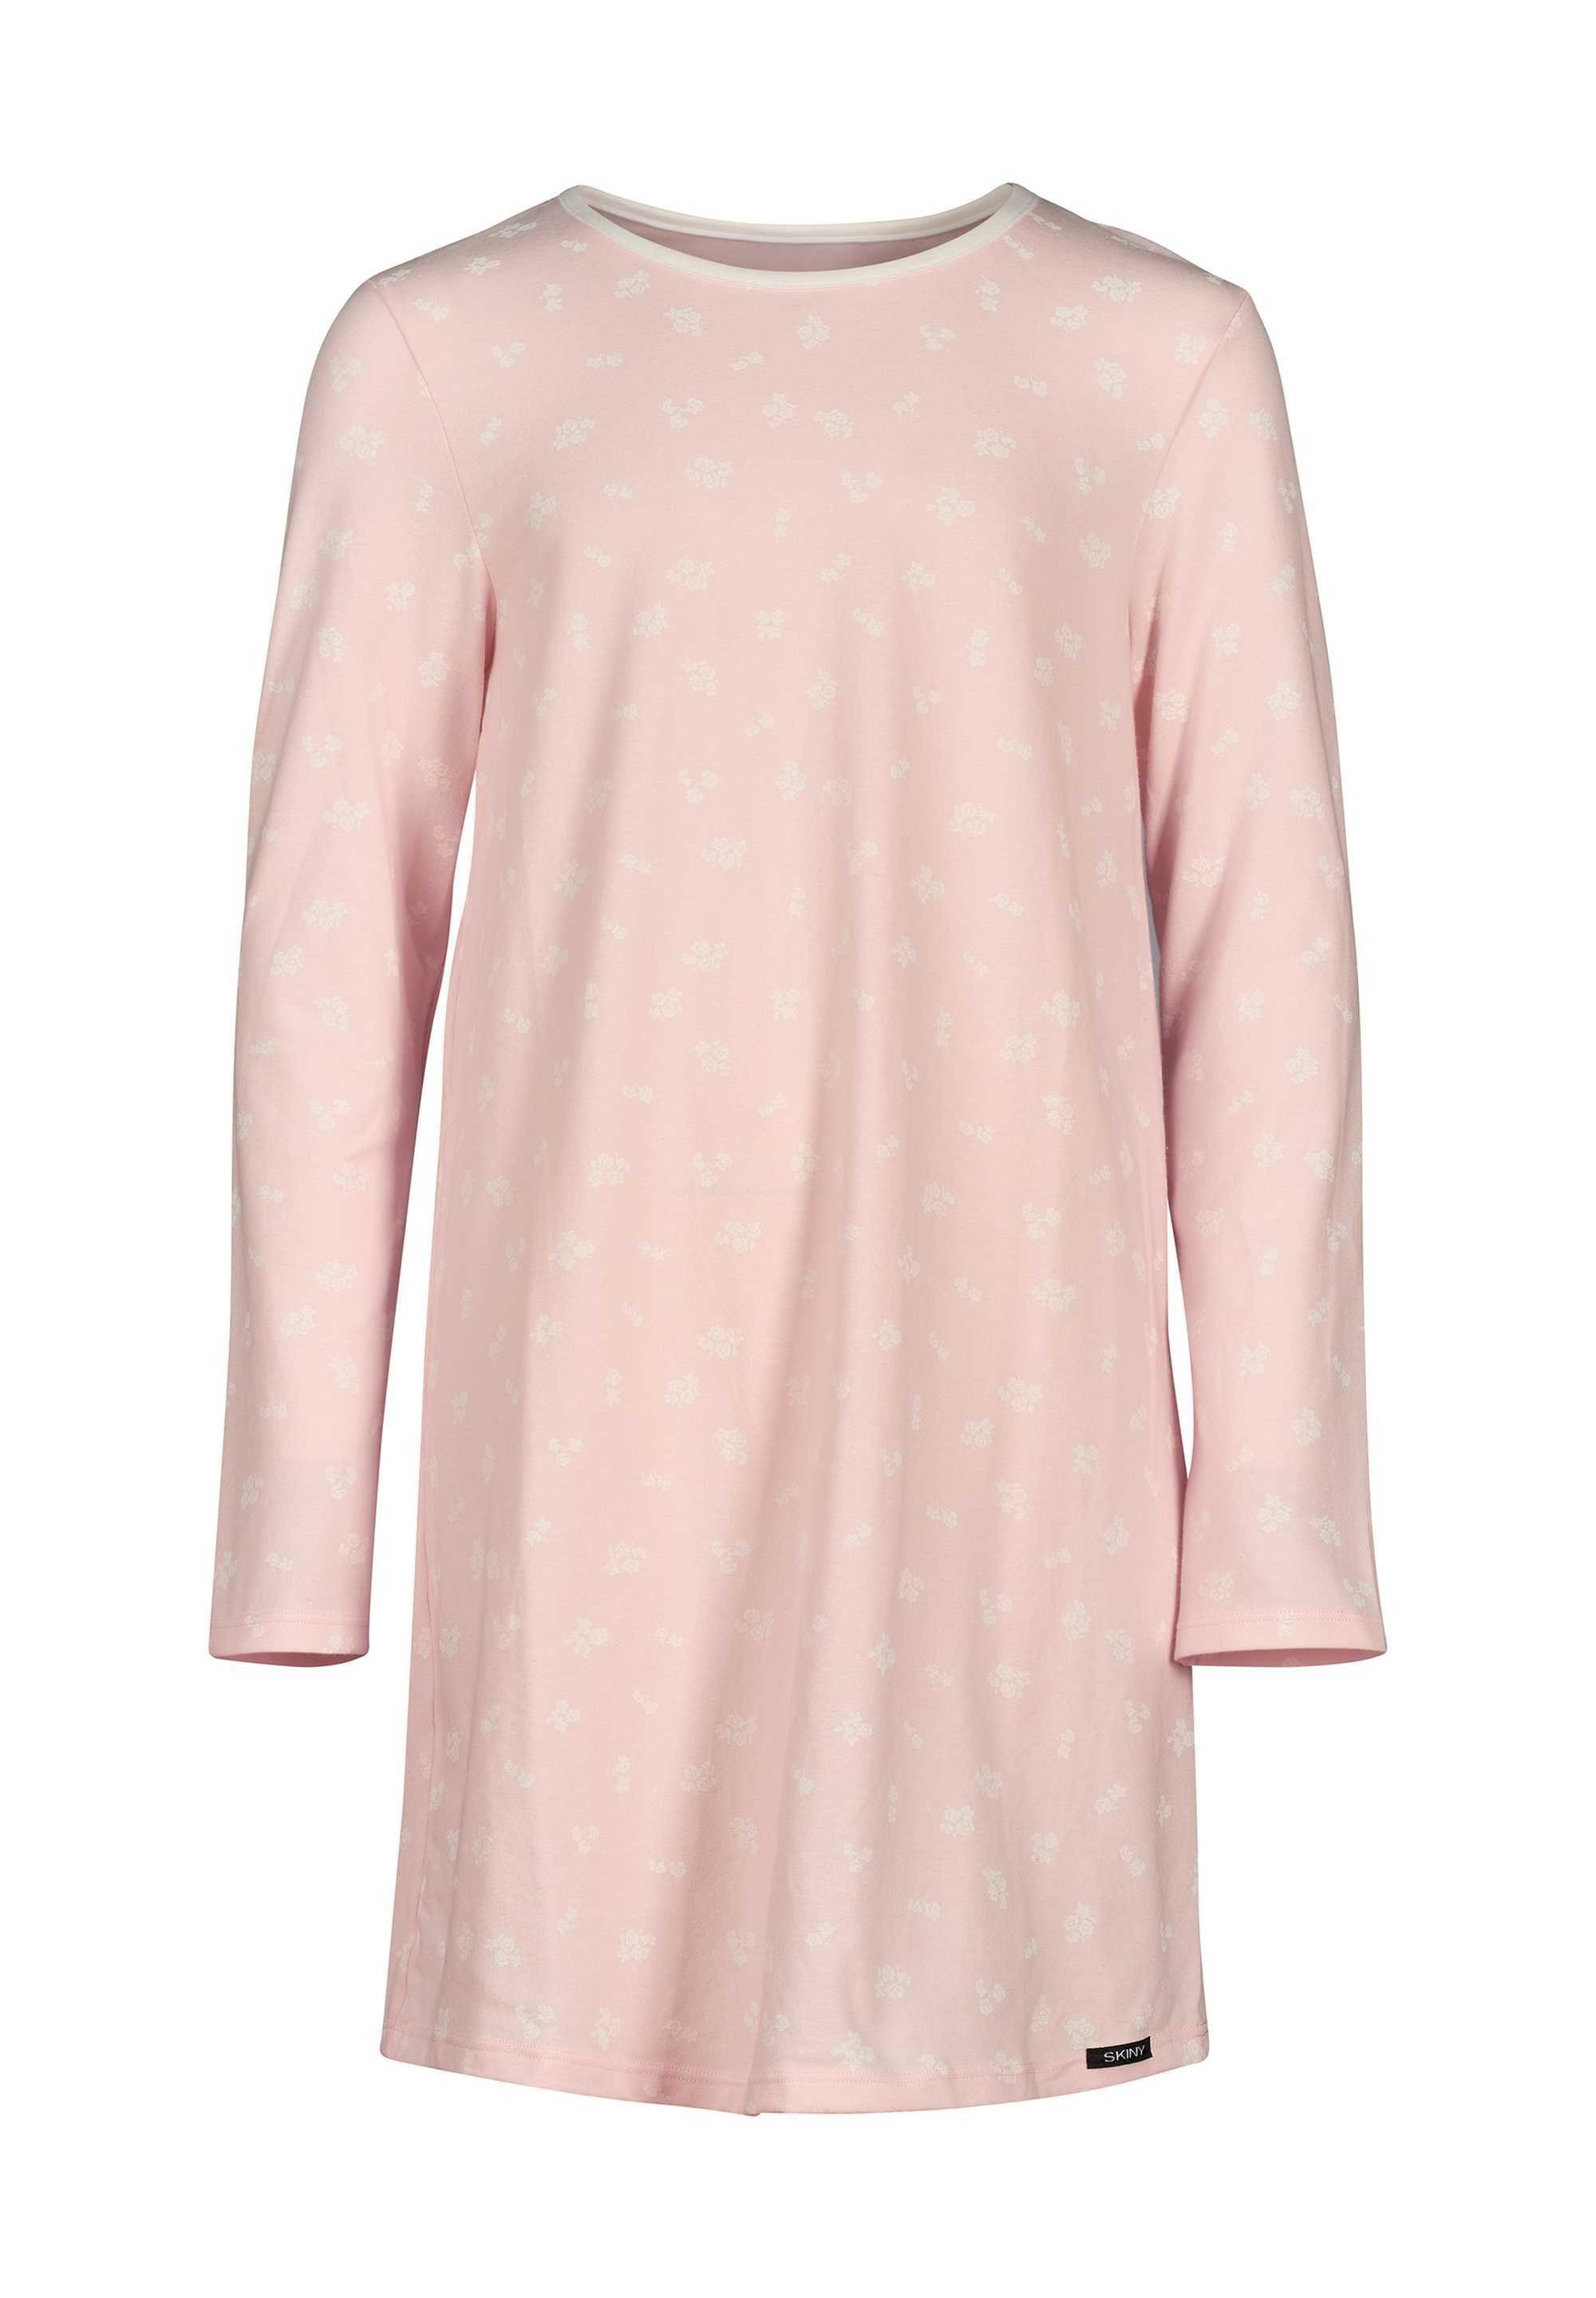 Langarm, Nachthemd Sleepshirt, Rosa Mädchen Pyjama Skiny Kinder -